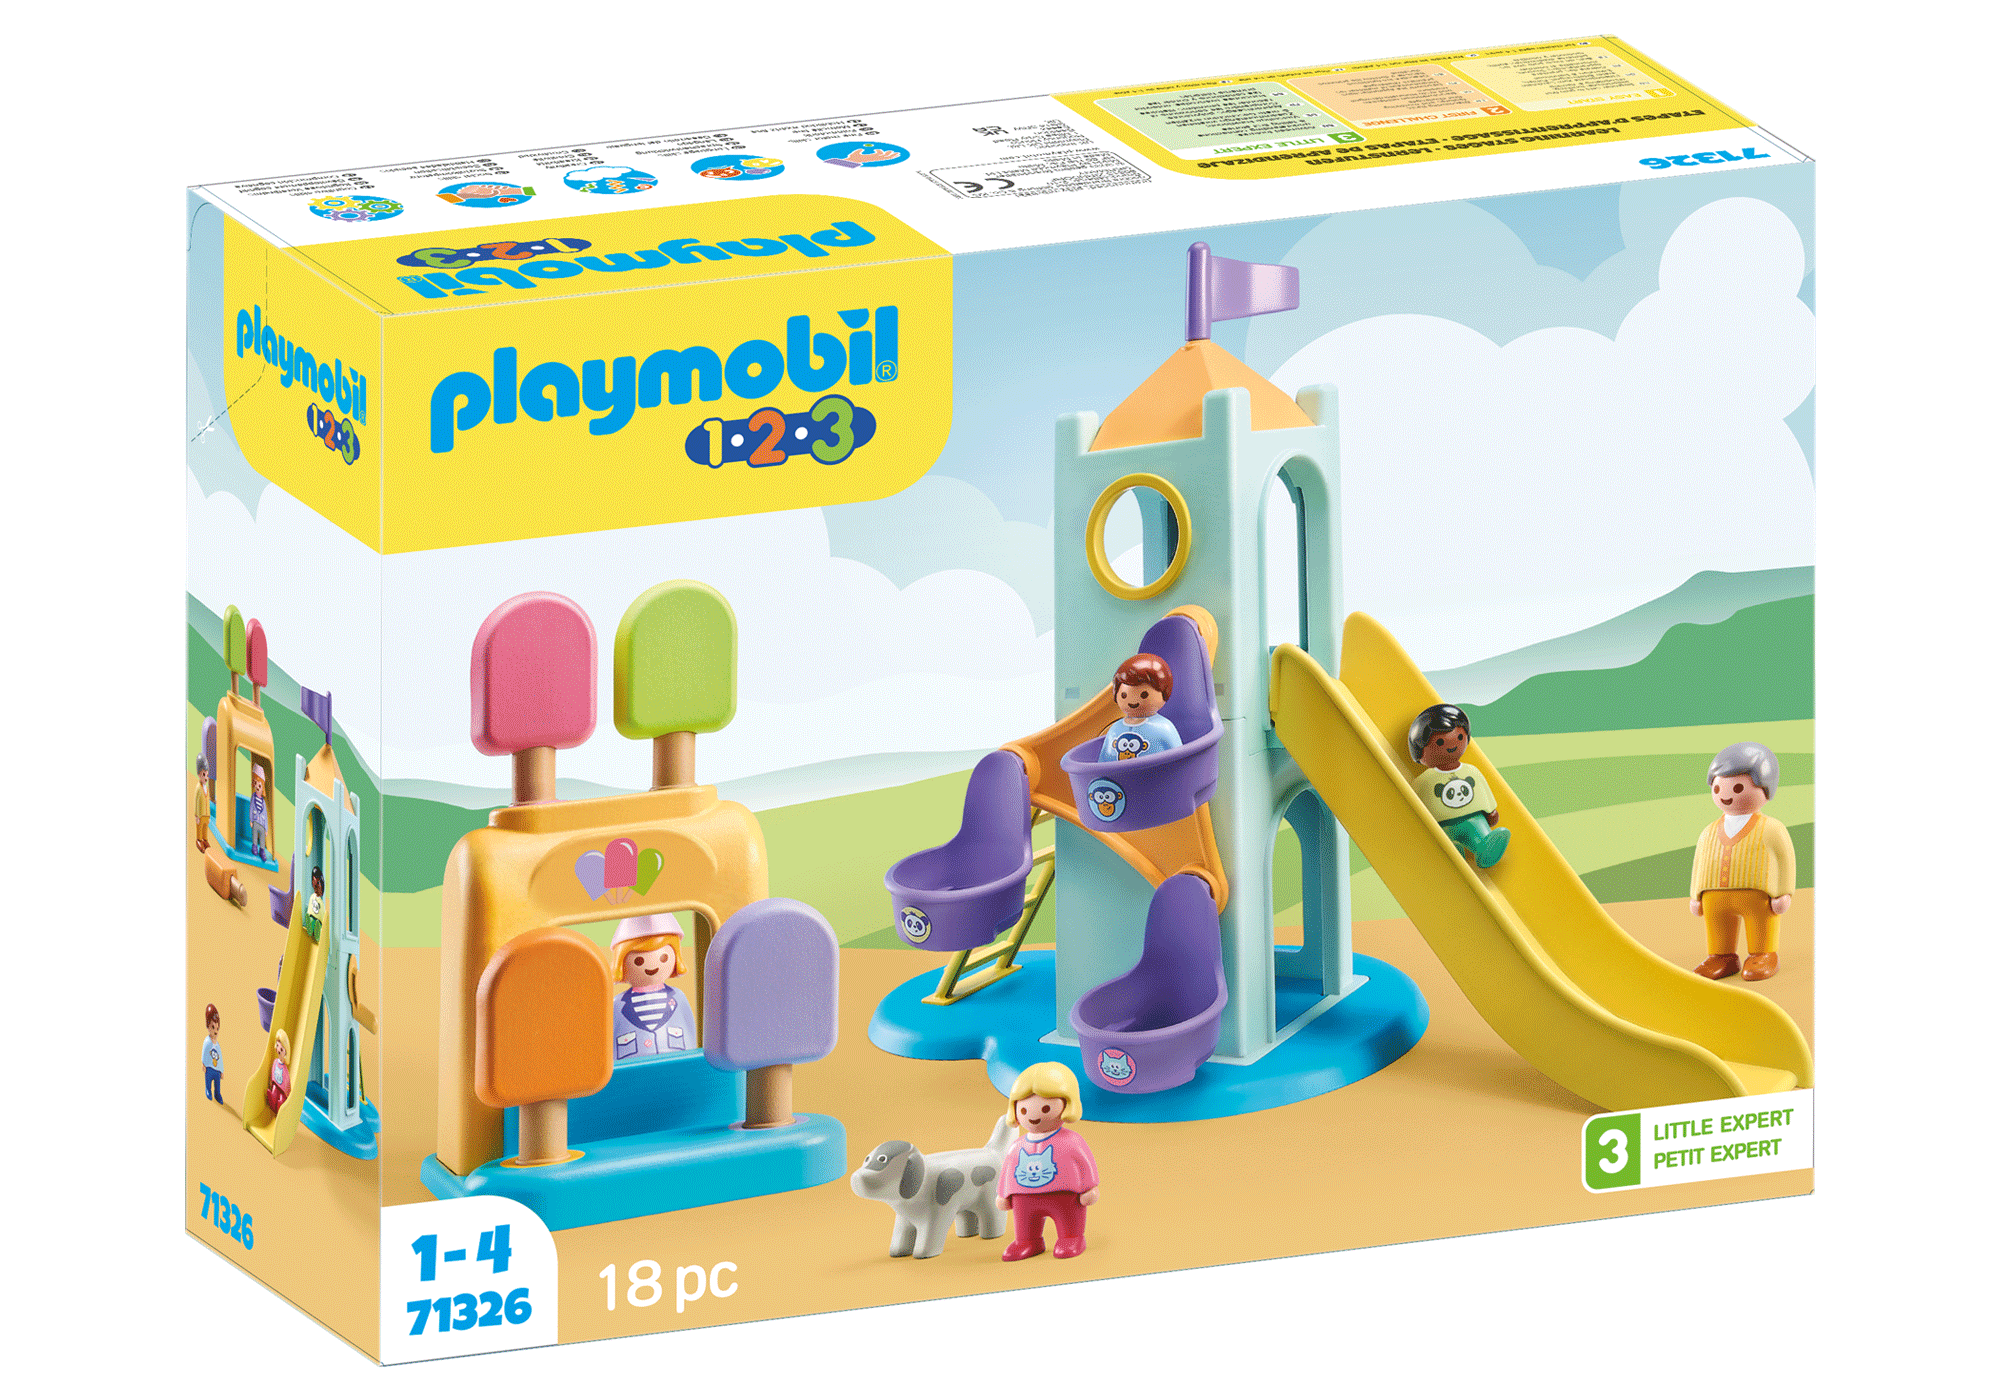 PLAYMOBIL 1.2.3 71157 Aire de jeux- PLAYMOBIL 1.2.3 - Pour les tout-petits  18-36 mois - Mes premiers Playmobil - Apprendre en s'amusant au meilleur  prix